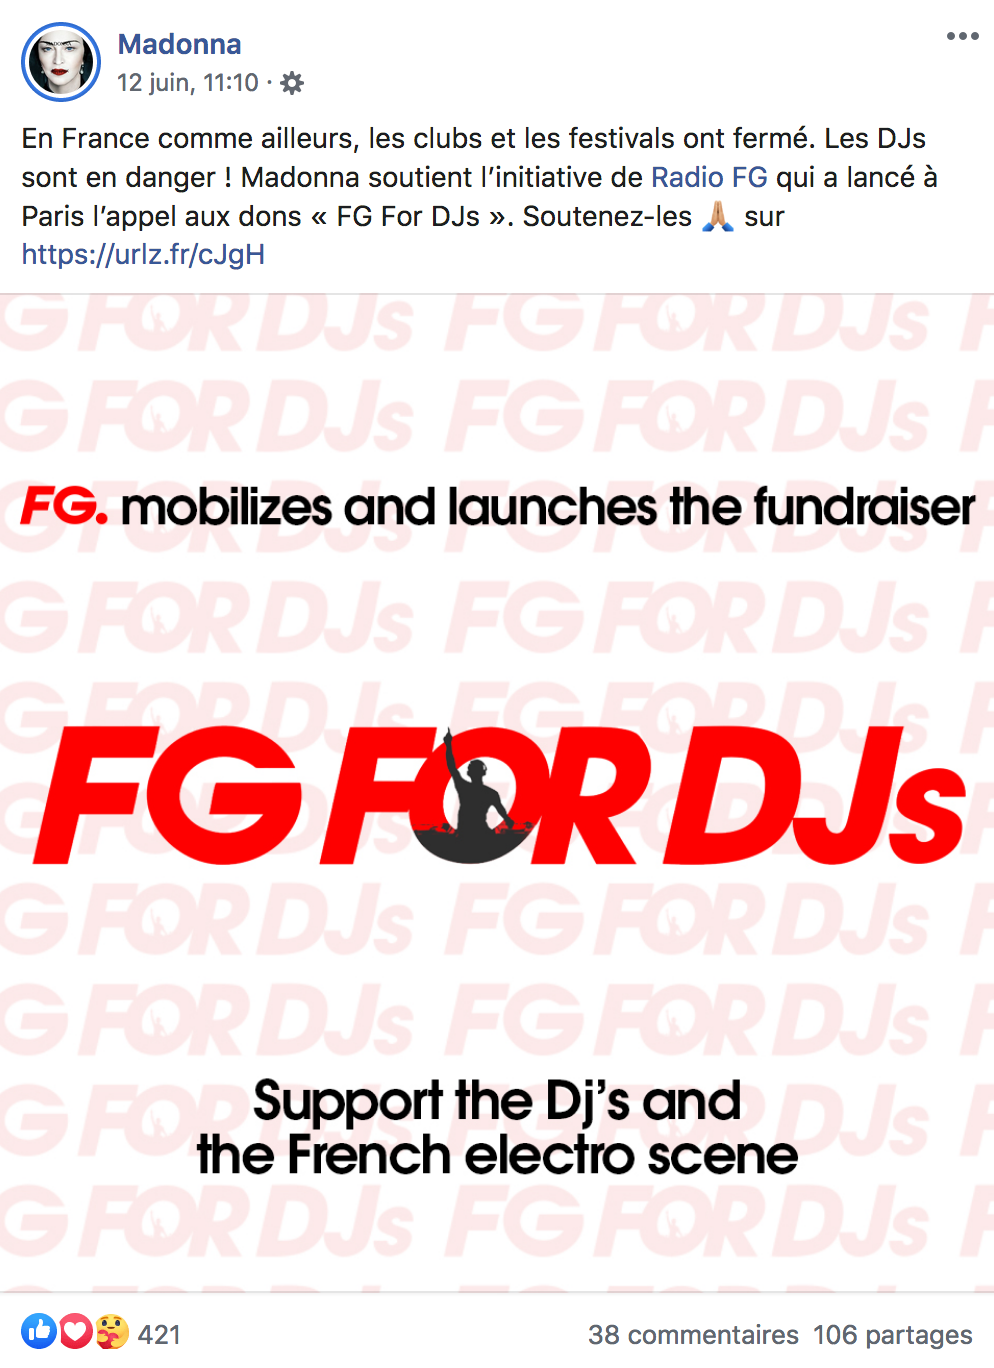 La chanteuse Madonna soutient l'opération "FG for DJs"